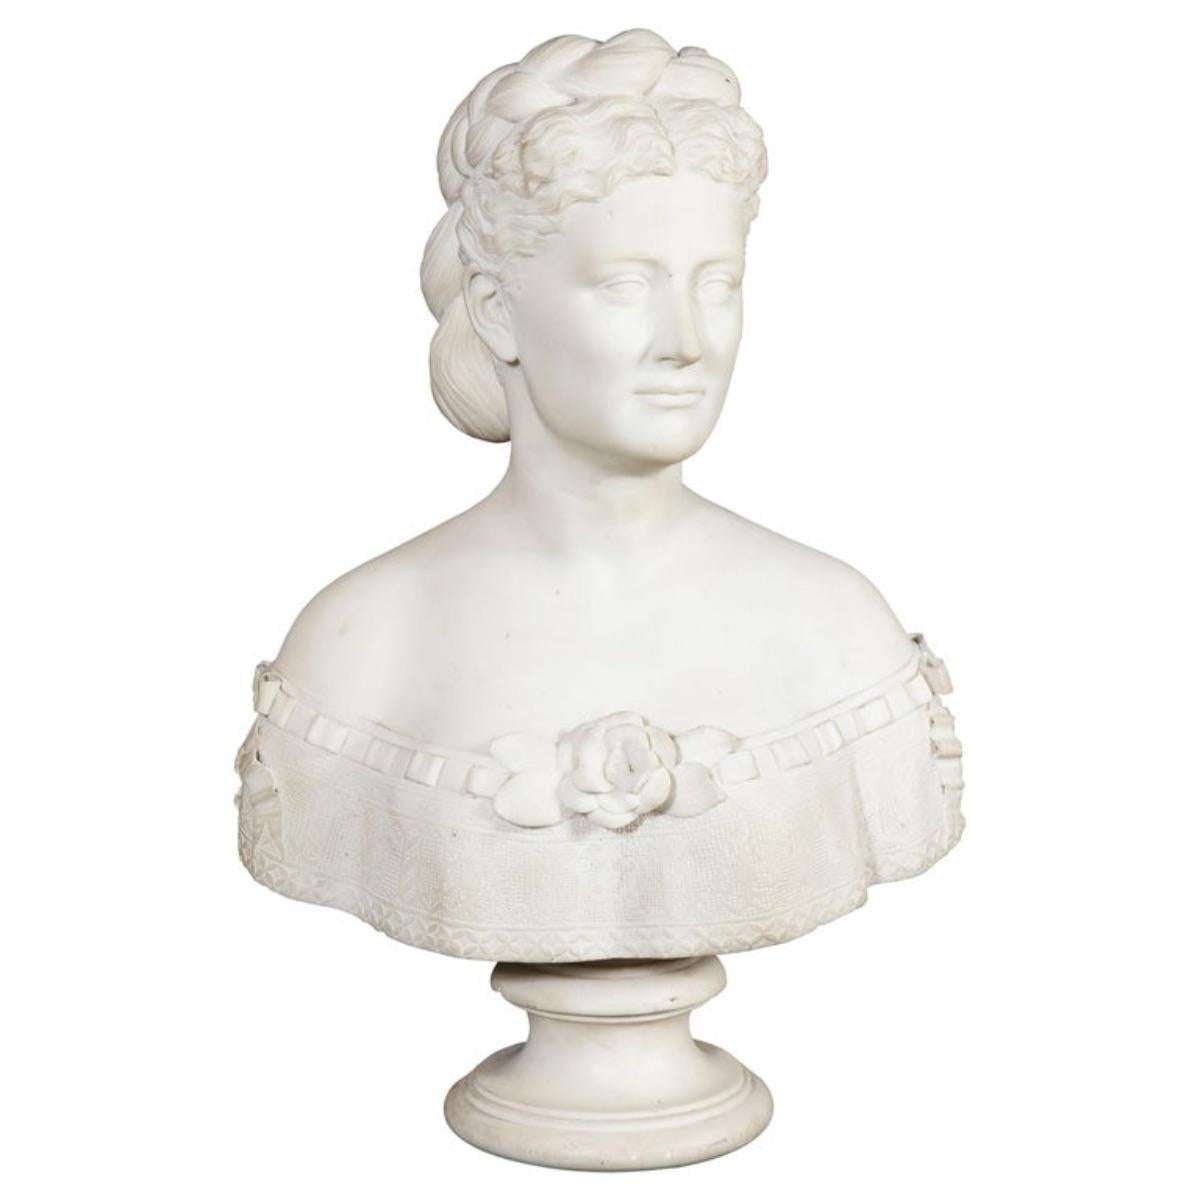 Buste extrêmement rare de femme en marbre blanc américain de Thomas Ridgeway Gould (1818-1881), datant d'environ 1870.  

Représentation d'une belle femme aux cheveux séparés et tressés en chignon. Très belle qualité, chef-d'œuvre, sculpture de